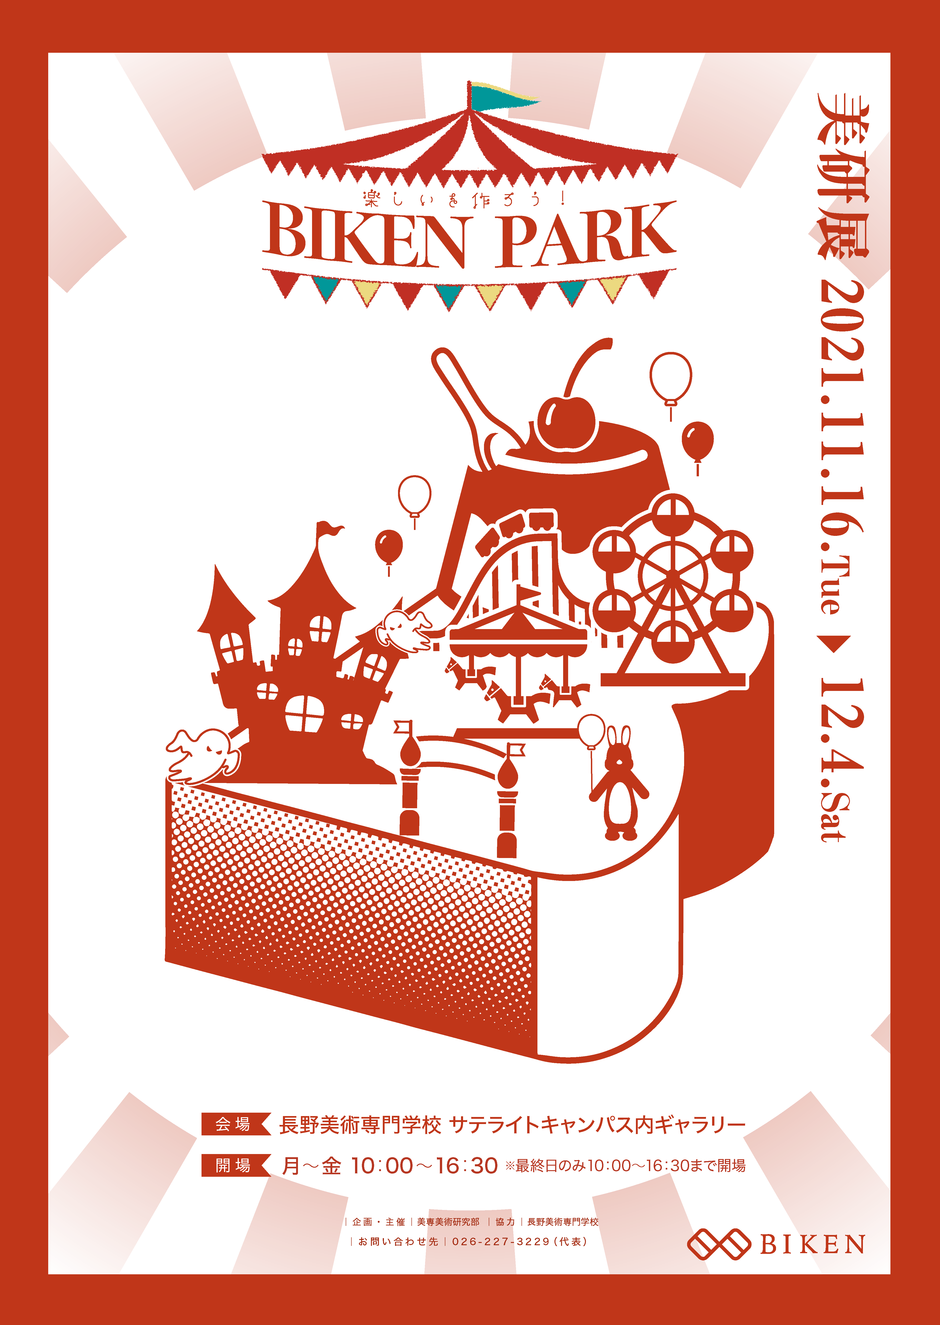 ギャラリー企画展「BIKEN PARK」を開催します。